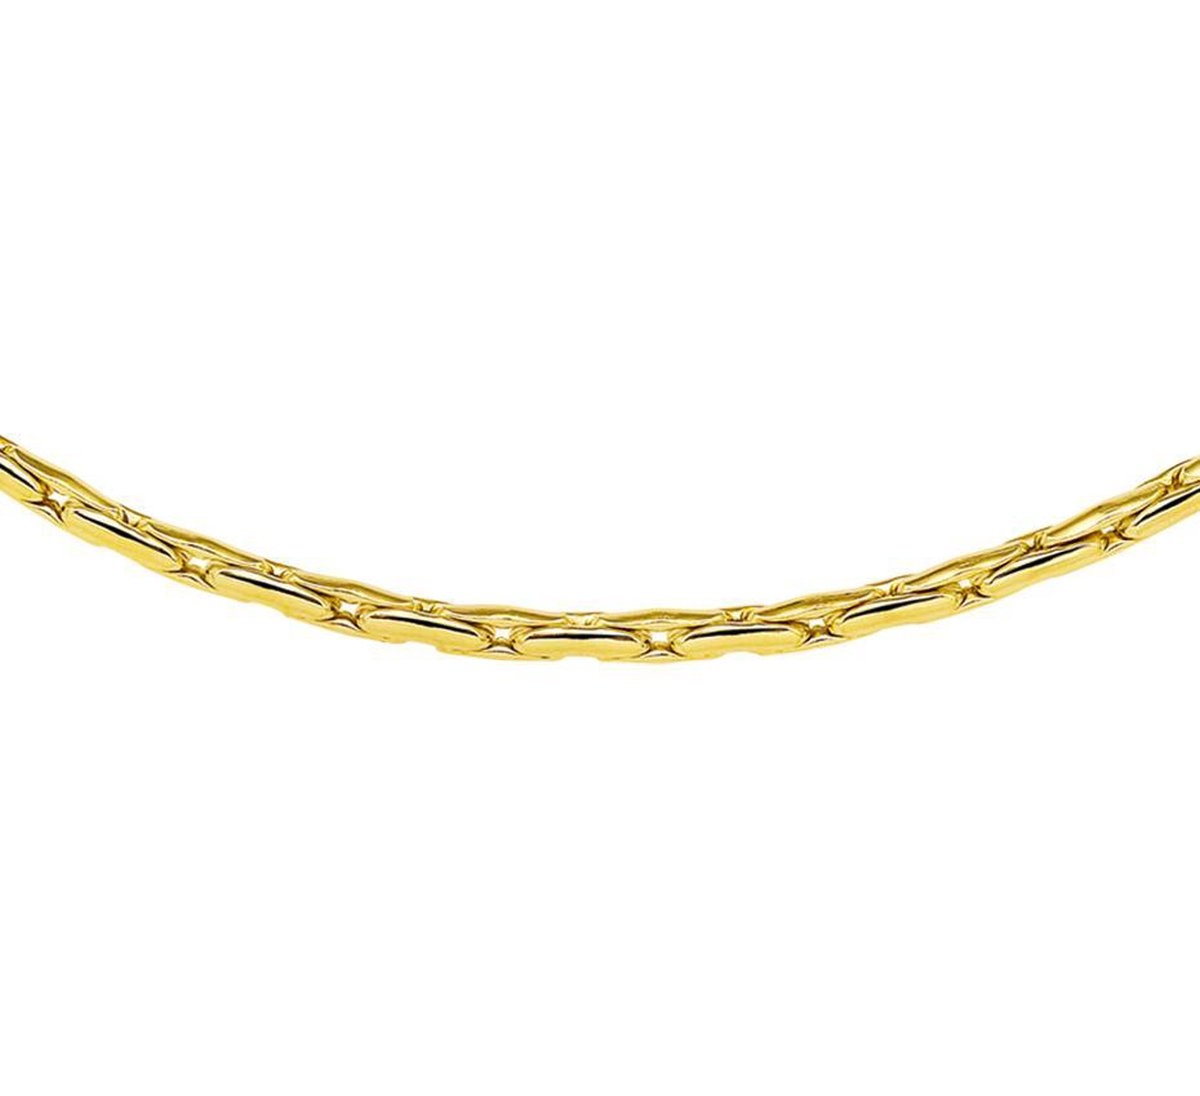 ZilGold 14k gouden collier met daarin een kern van 925 zilver.